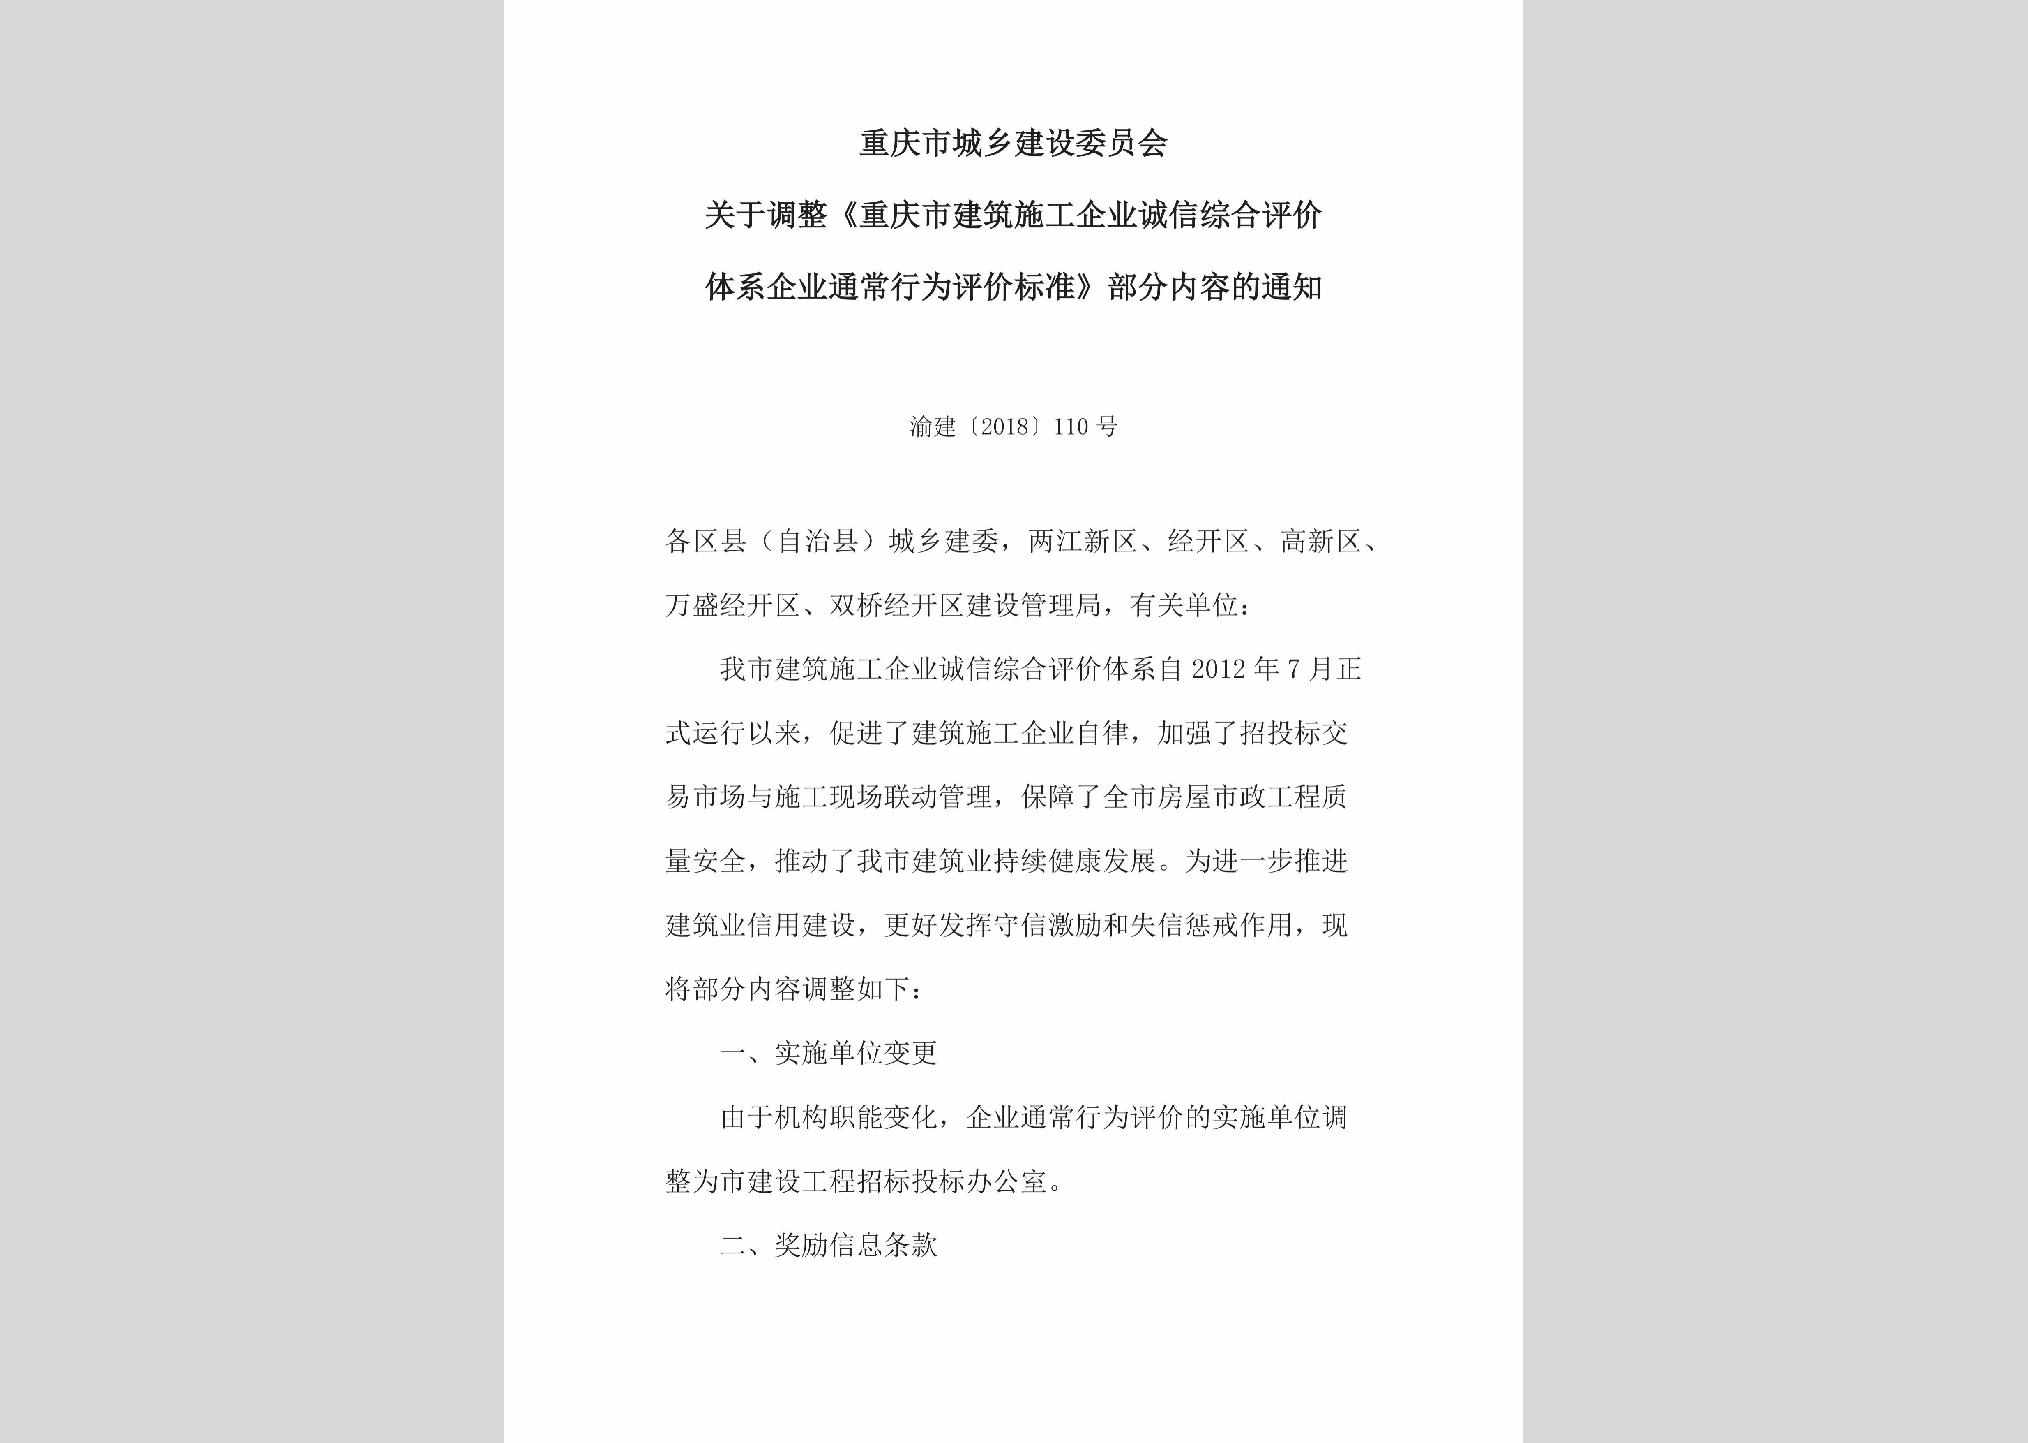 渝建[2018]110号：关于调整《重庆市建筑施工企业诚信综合评价体系企业通常行为评价标准》部分内容的通知